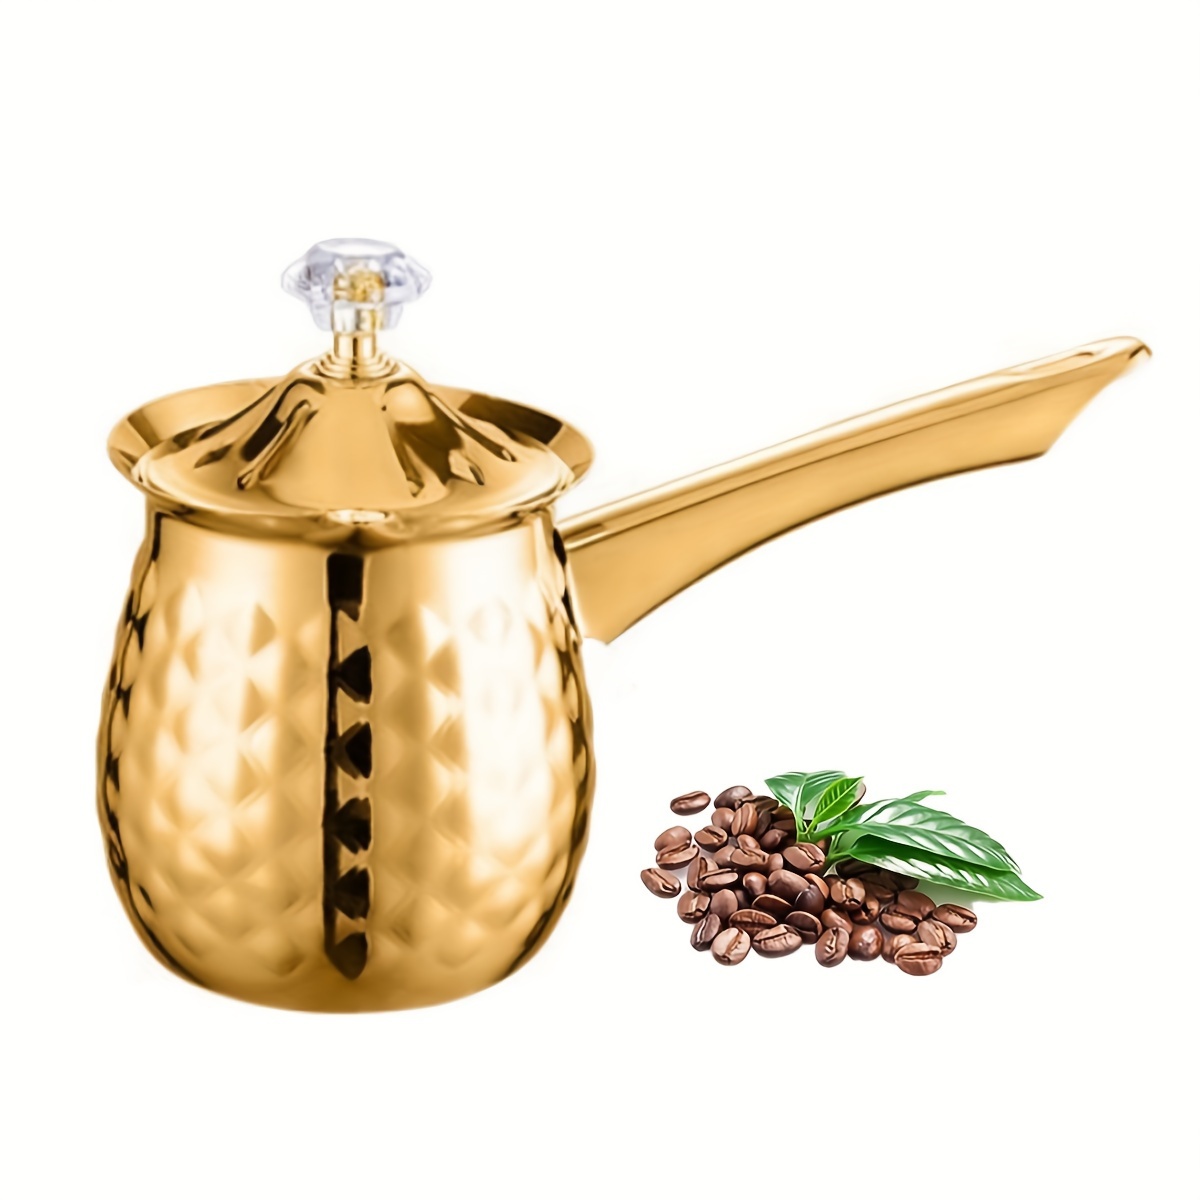 Jarra de acero inoxidable para espumar leche y café, jarra de café con tapa  para café casero (1#)